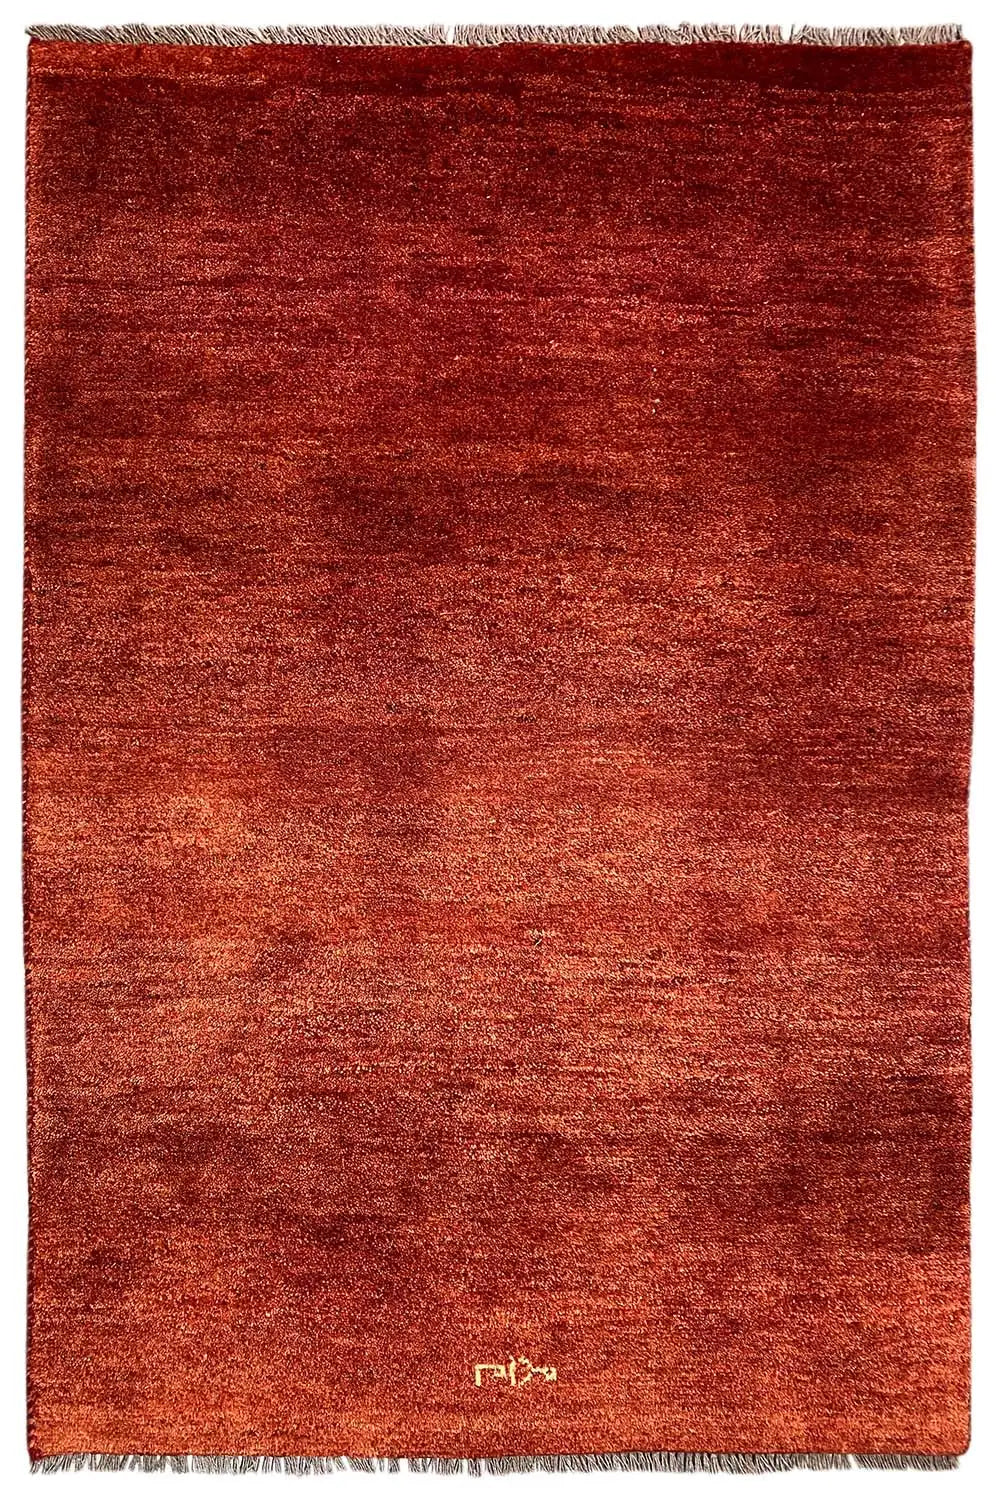 Gabbeh - (175x114cm) - German Carpet Shop